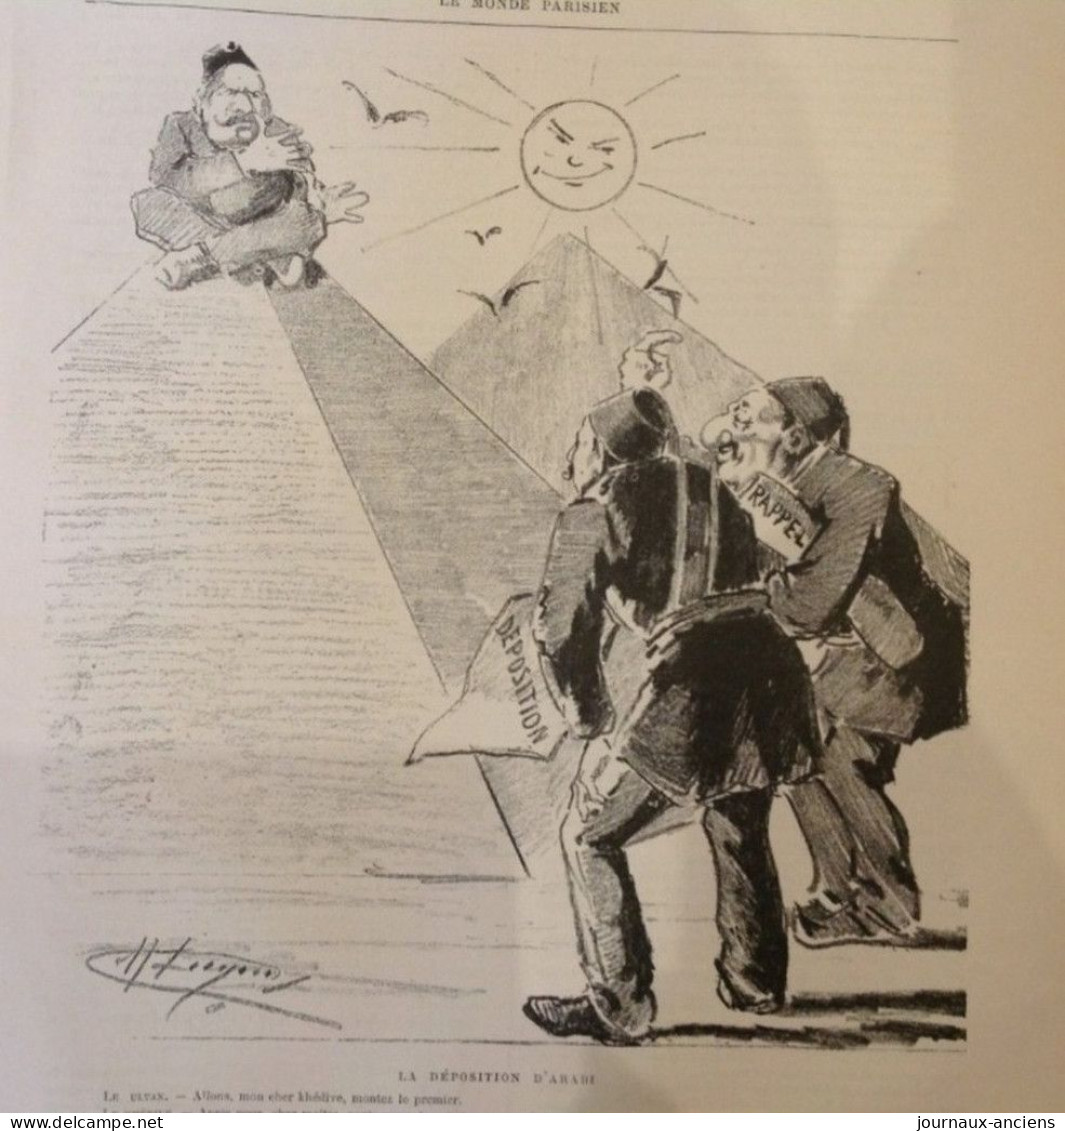 1882 LE MONDE PARISIEN - ARABI PACHA - PARIS CRISE MUNICIPALE Mr FLOQUET - CHUTE D'UN MINISTRE PAR UN COCHINCHINOIS - Zeitschriften - Vor 1900